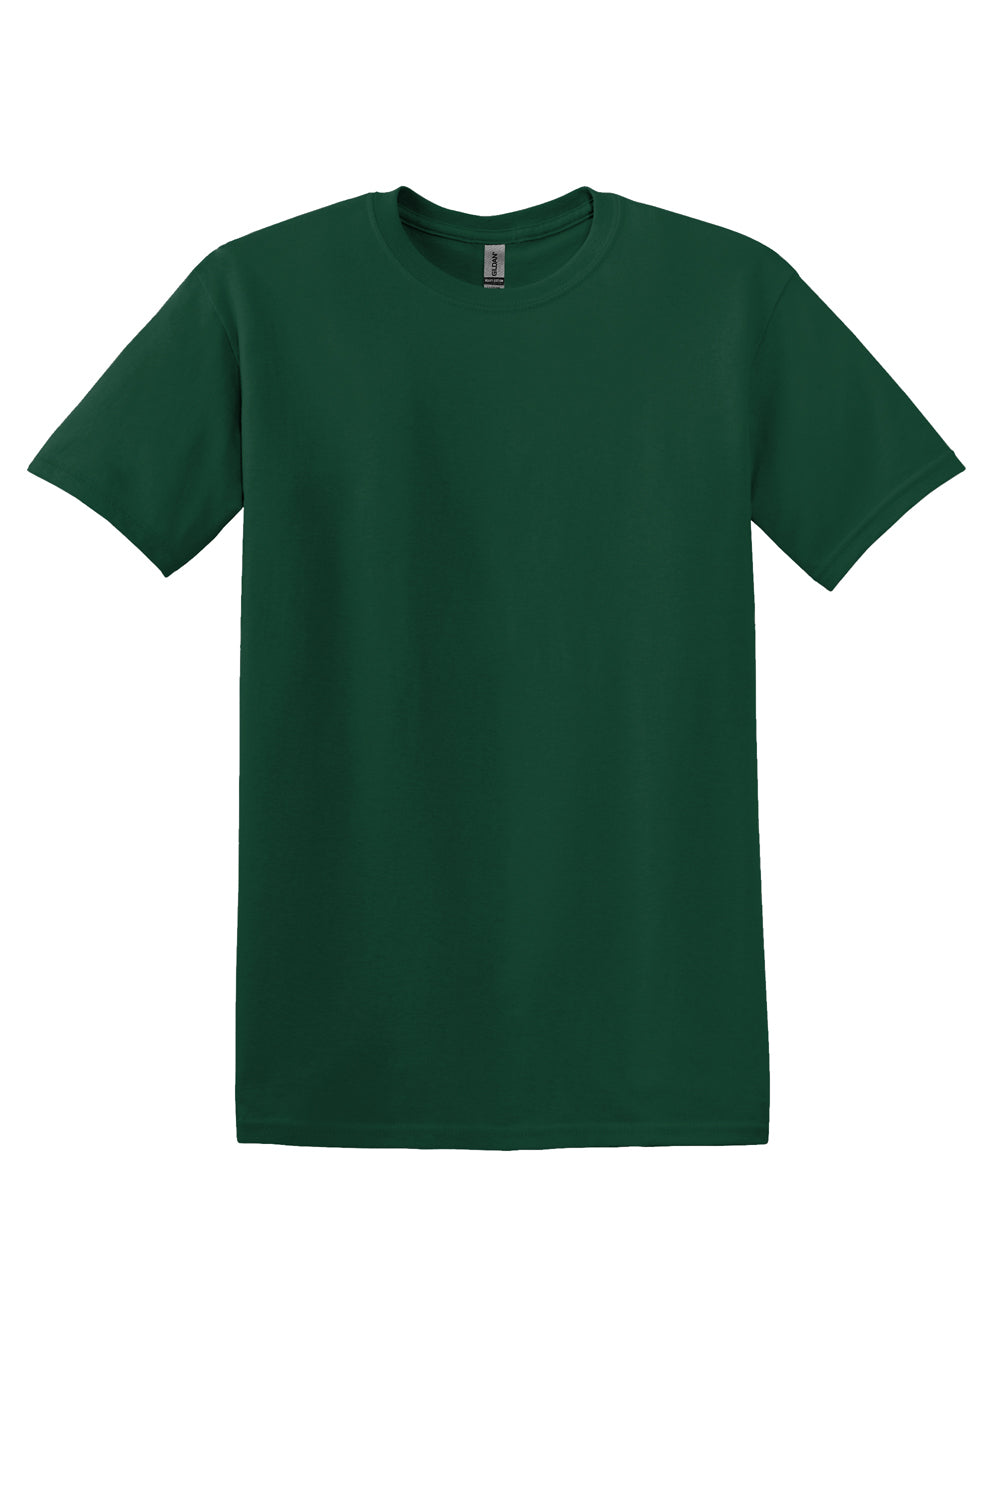 Gildan Mens Softstyle Short Sleeve Crewneck T-Shirt Forest Green Flat Front